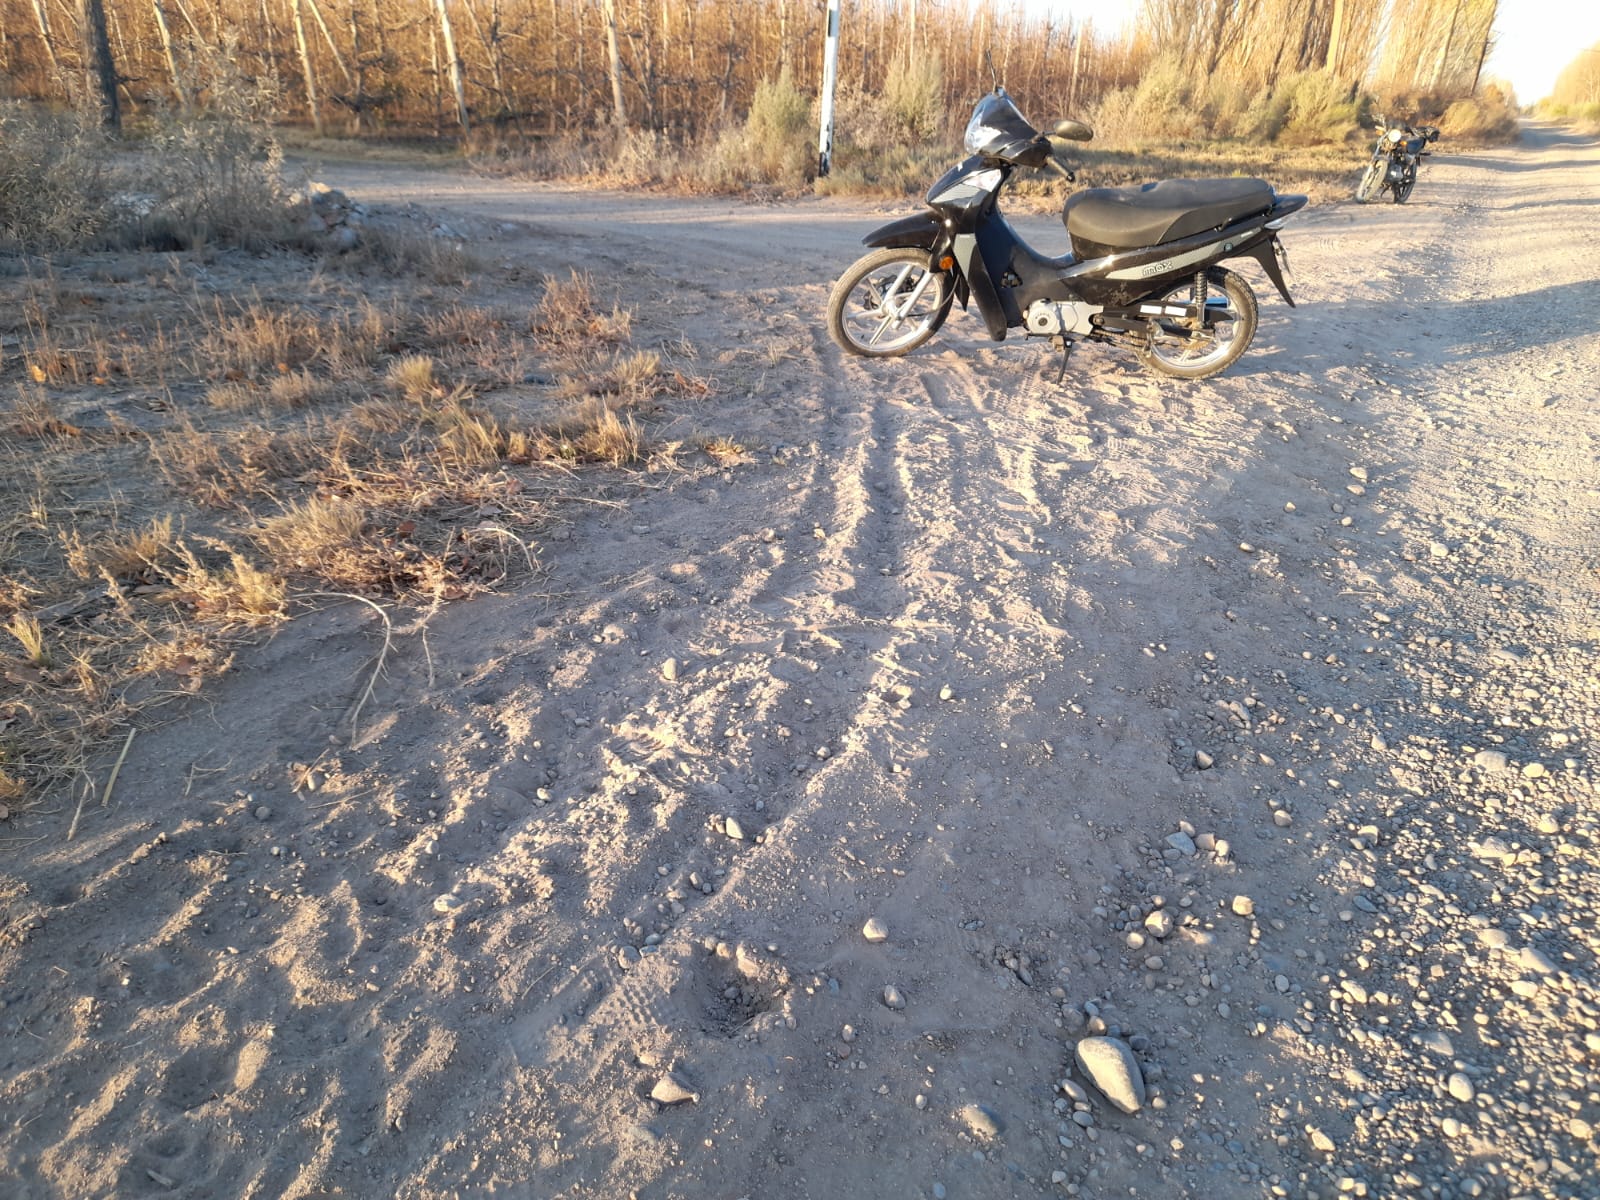 El sujeto abandonó la moto en la zona rural y luego fue detenido en medio de las chacras. foto: gentileza
